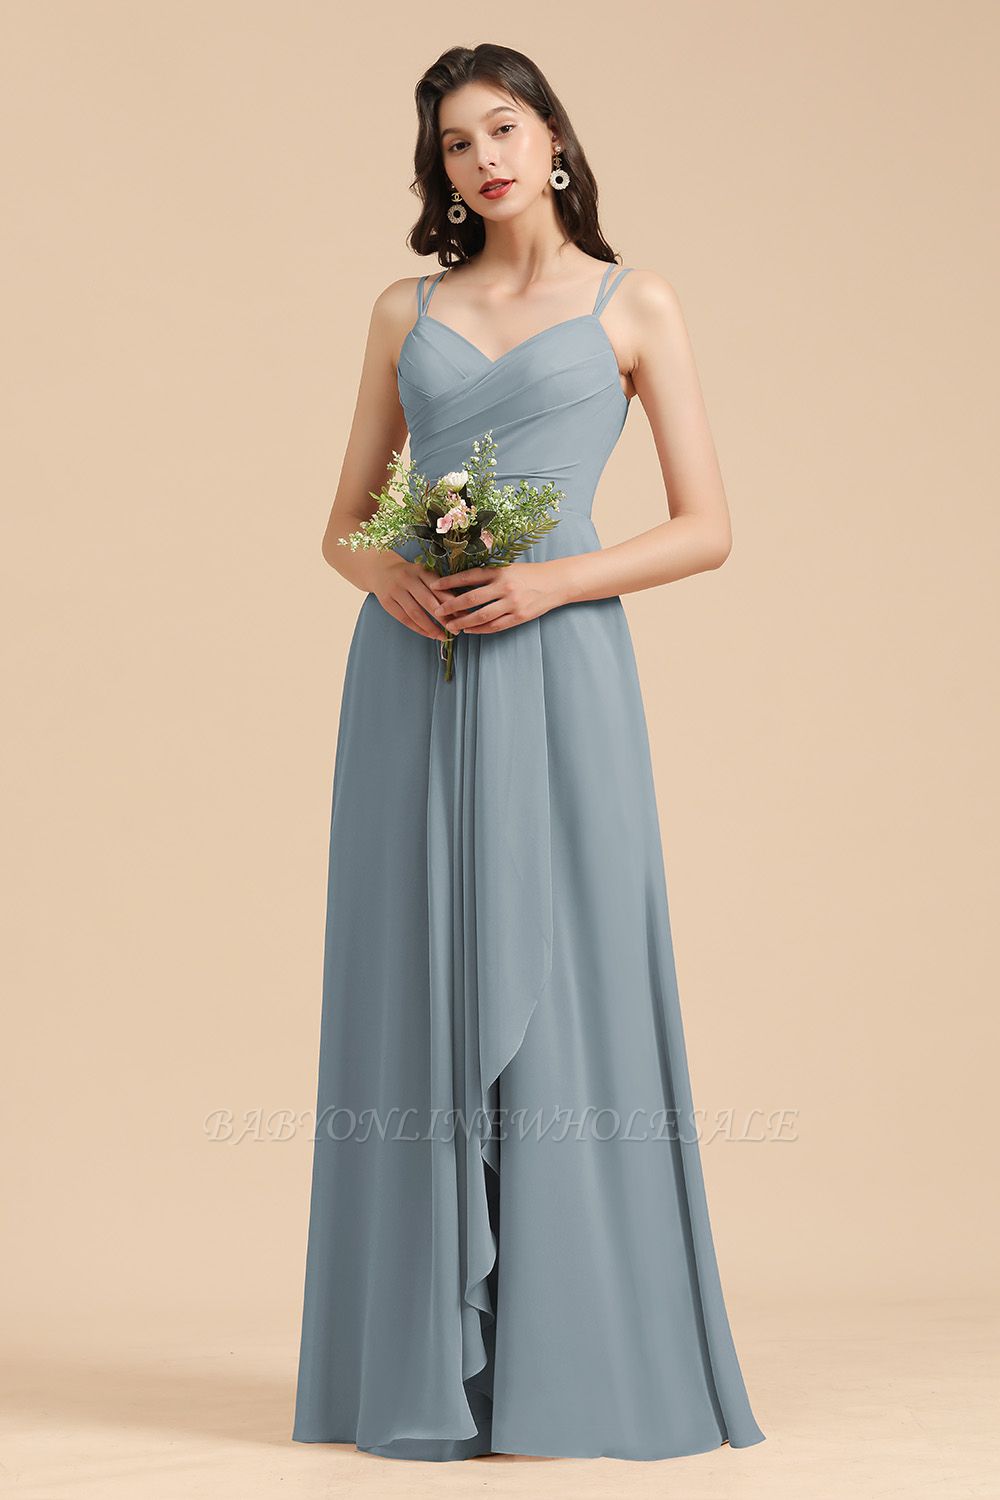 Elegant Ruched Chiffon Bridesmaid Dress Dusty Blue V-Neck Wedding Guest Dress